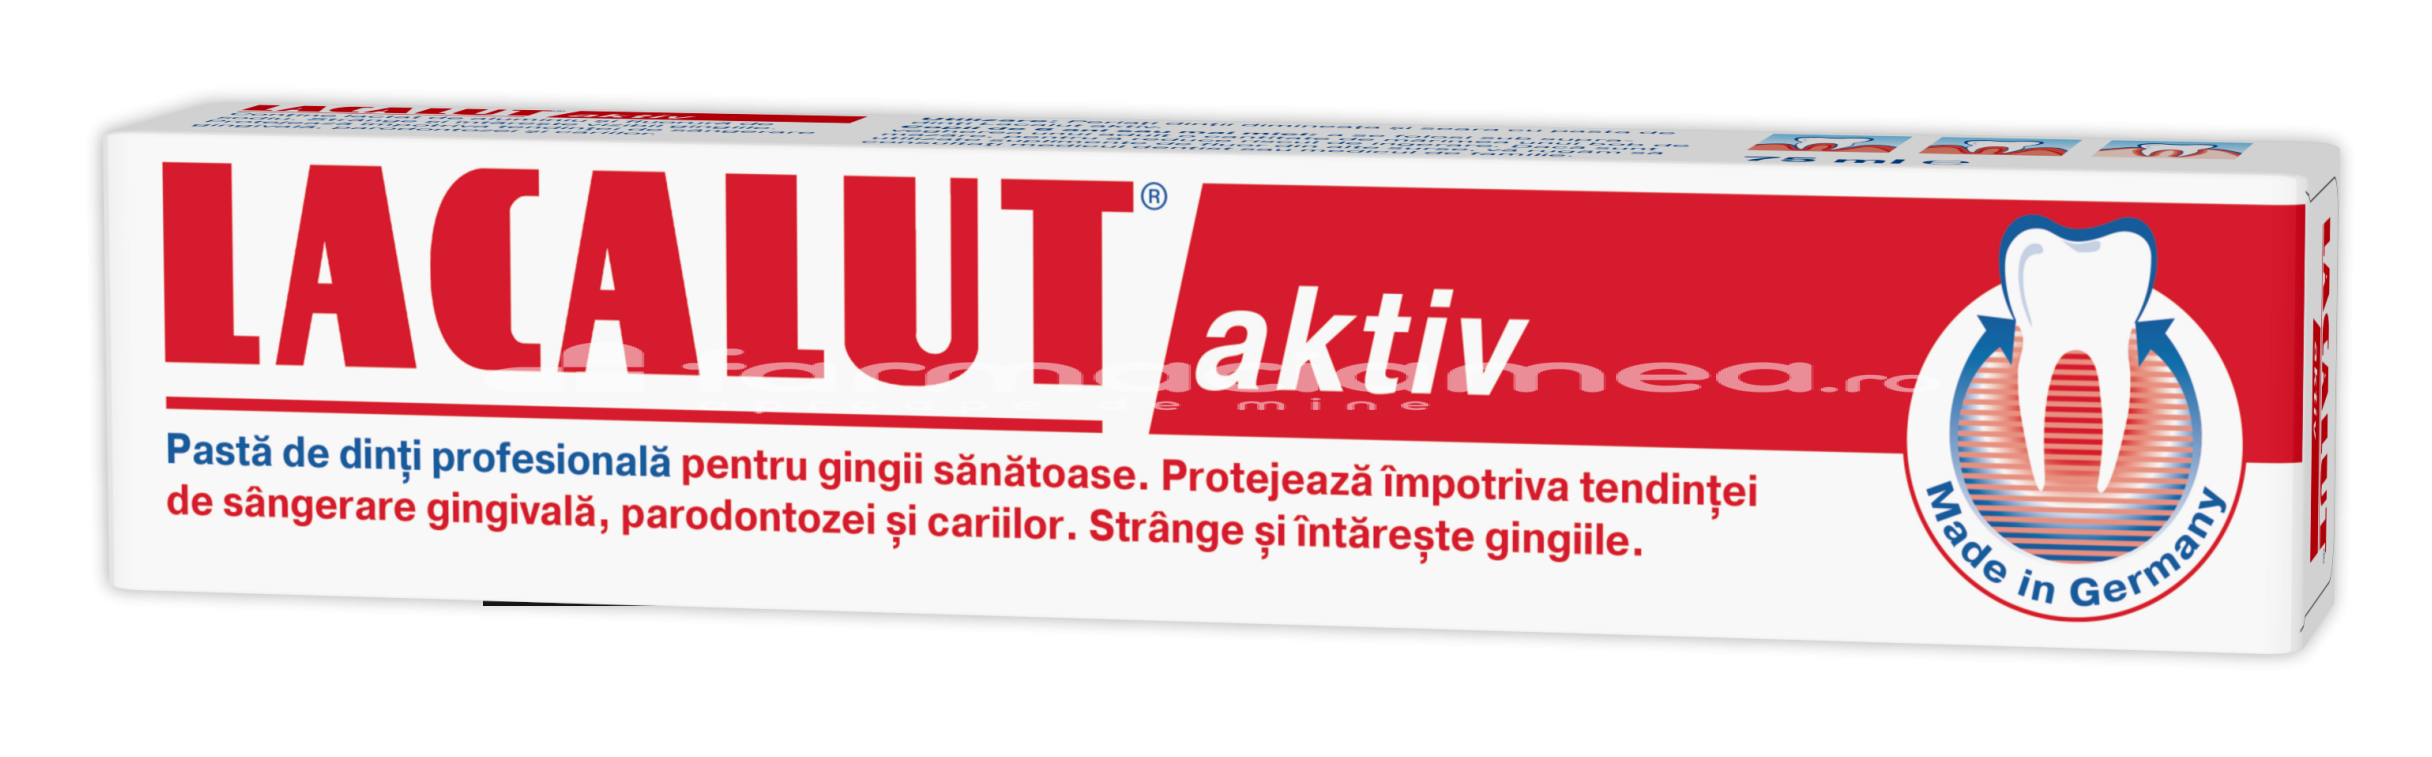 Pastă dinţi - Lacalut Aktiv pasta dinti, 75 ml, farmaciamea.ro